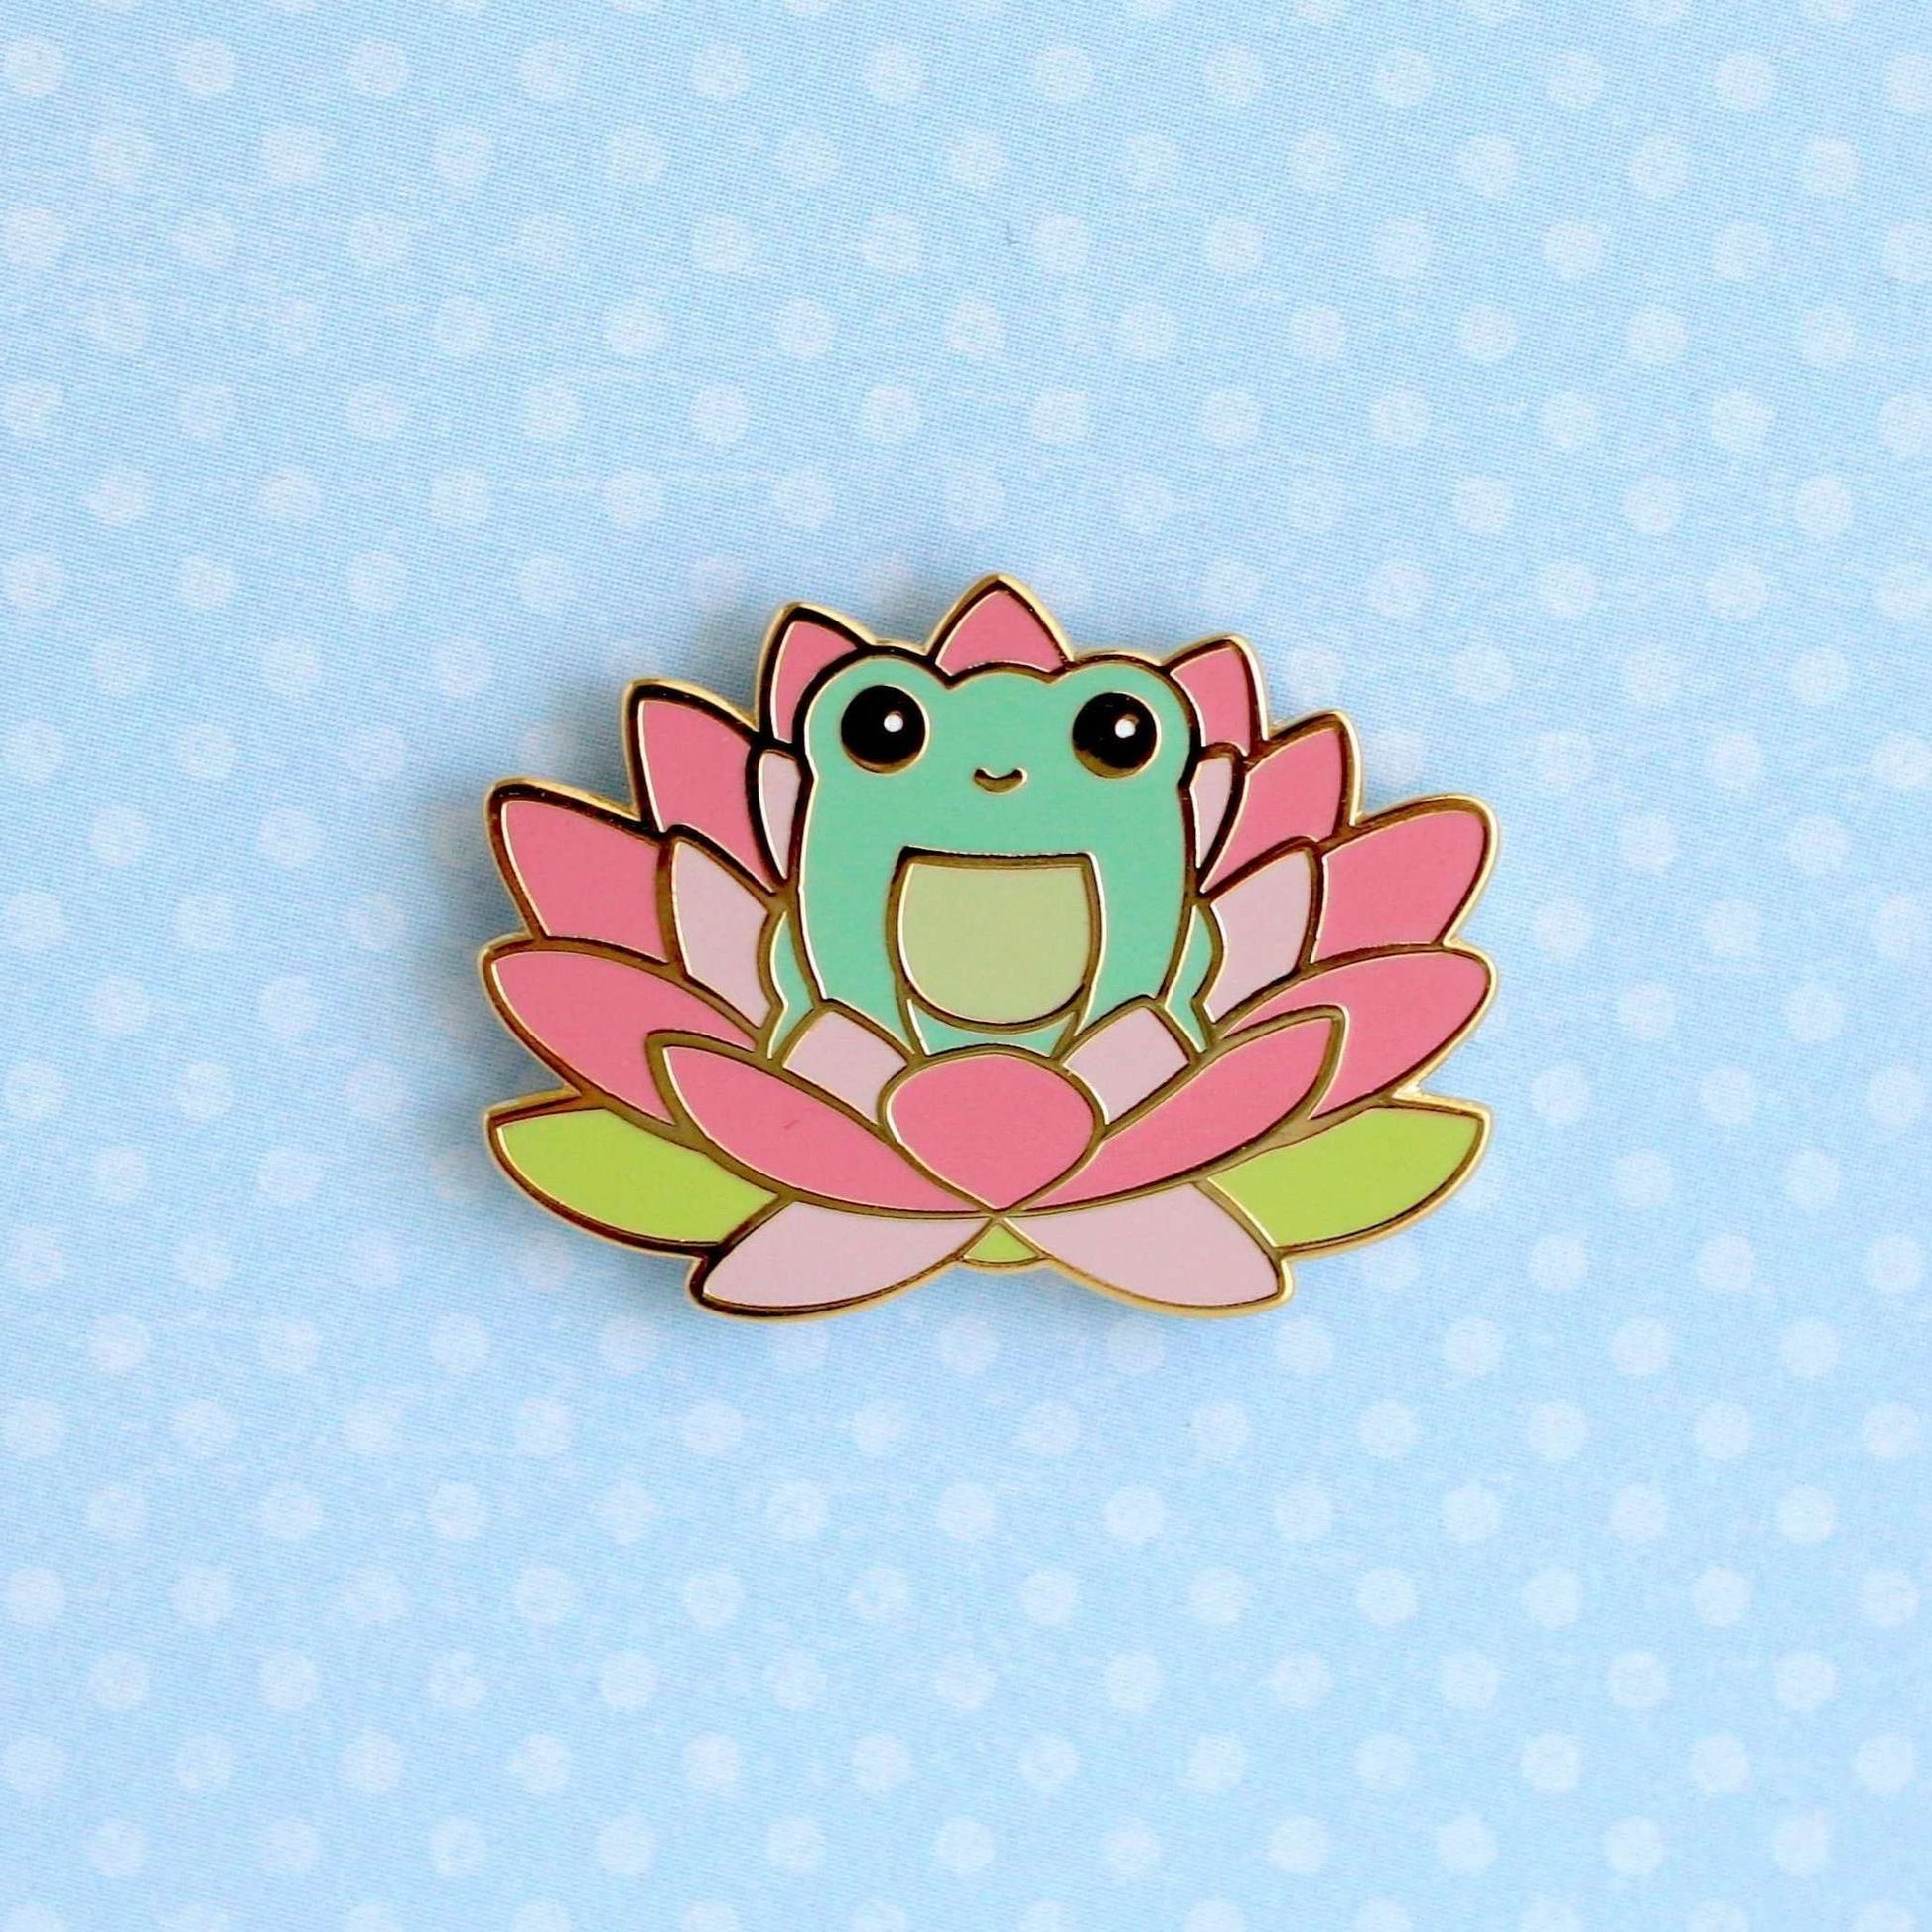 Wild Whimsy Woolies - Pink Lotus Flower Frog Pin - Hard Enamel Pin - Cute Frog